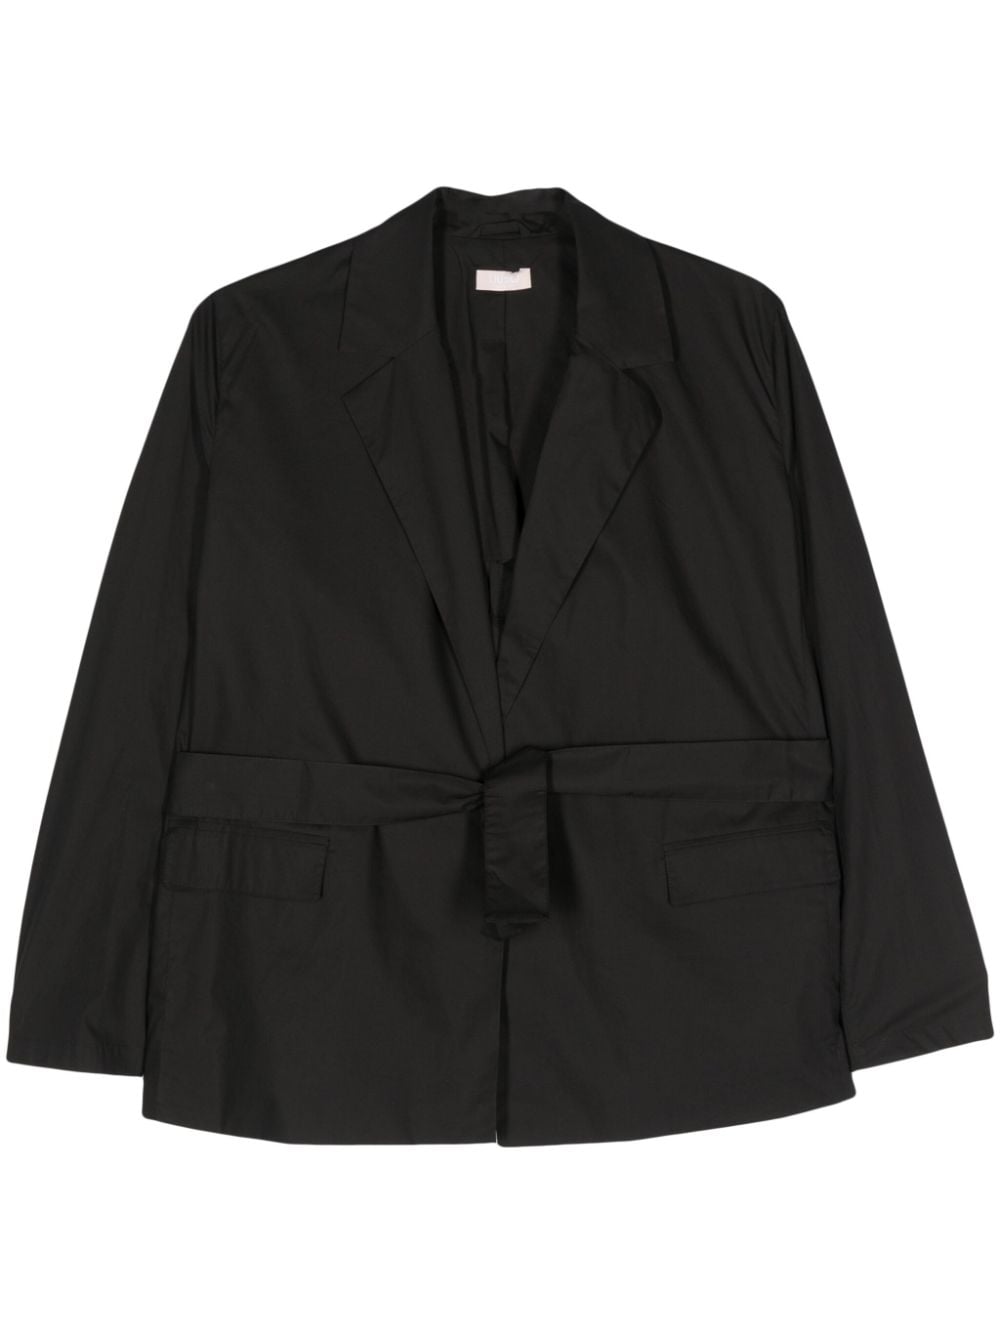 Liu •jo Belted Cotton Blazer In Black